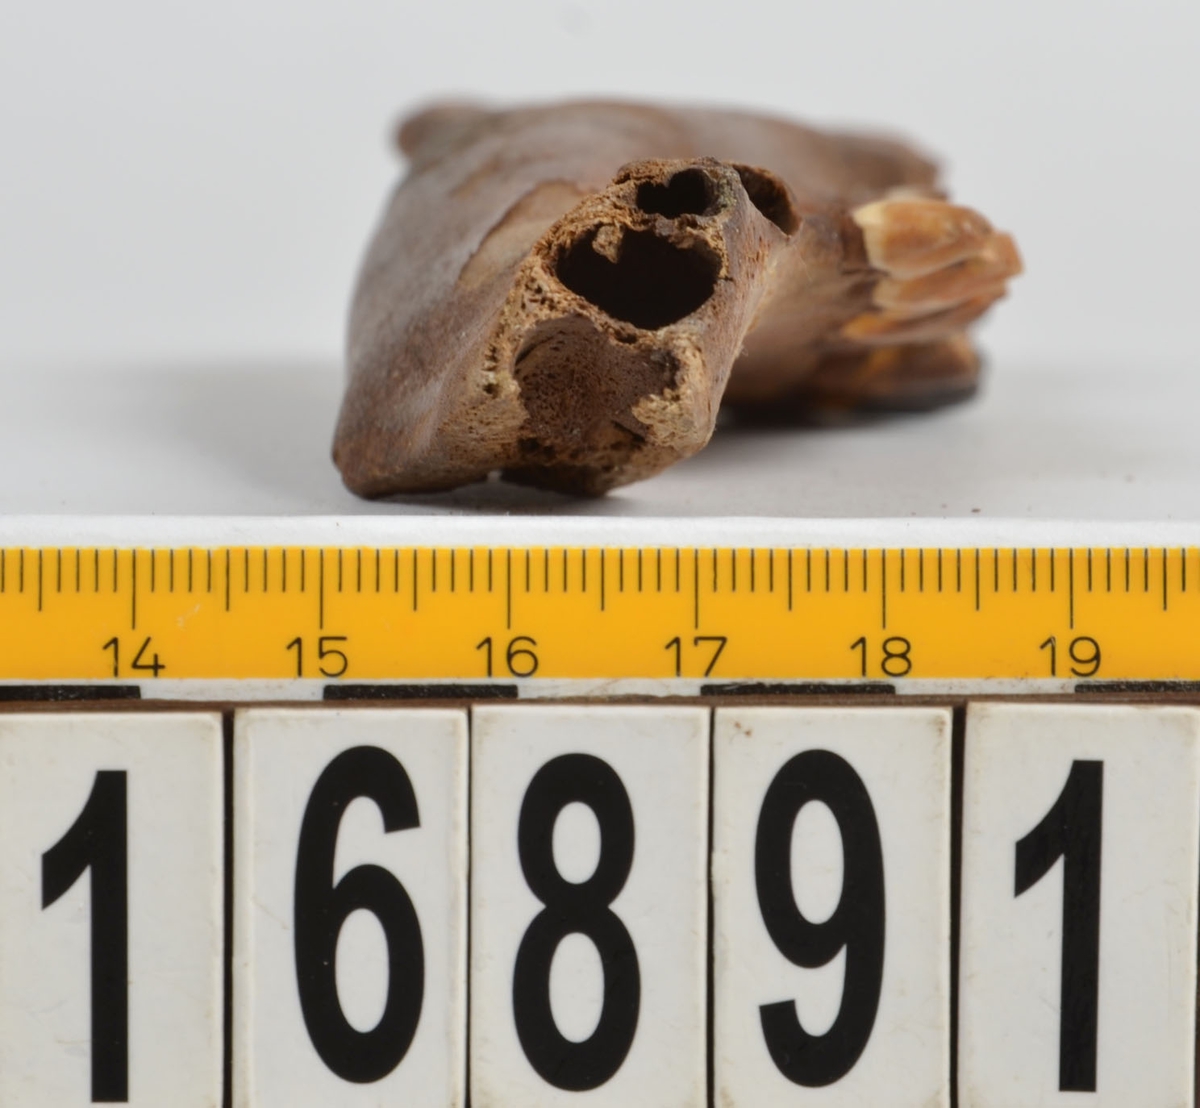 Ben från svin (Sus domesticus).
1 st. fragment av underkäke (mandibula) med en tand (dentes).
2 st. höger underkäke (mandibula dx).
1 st. överarmsben (humerus).